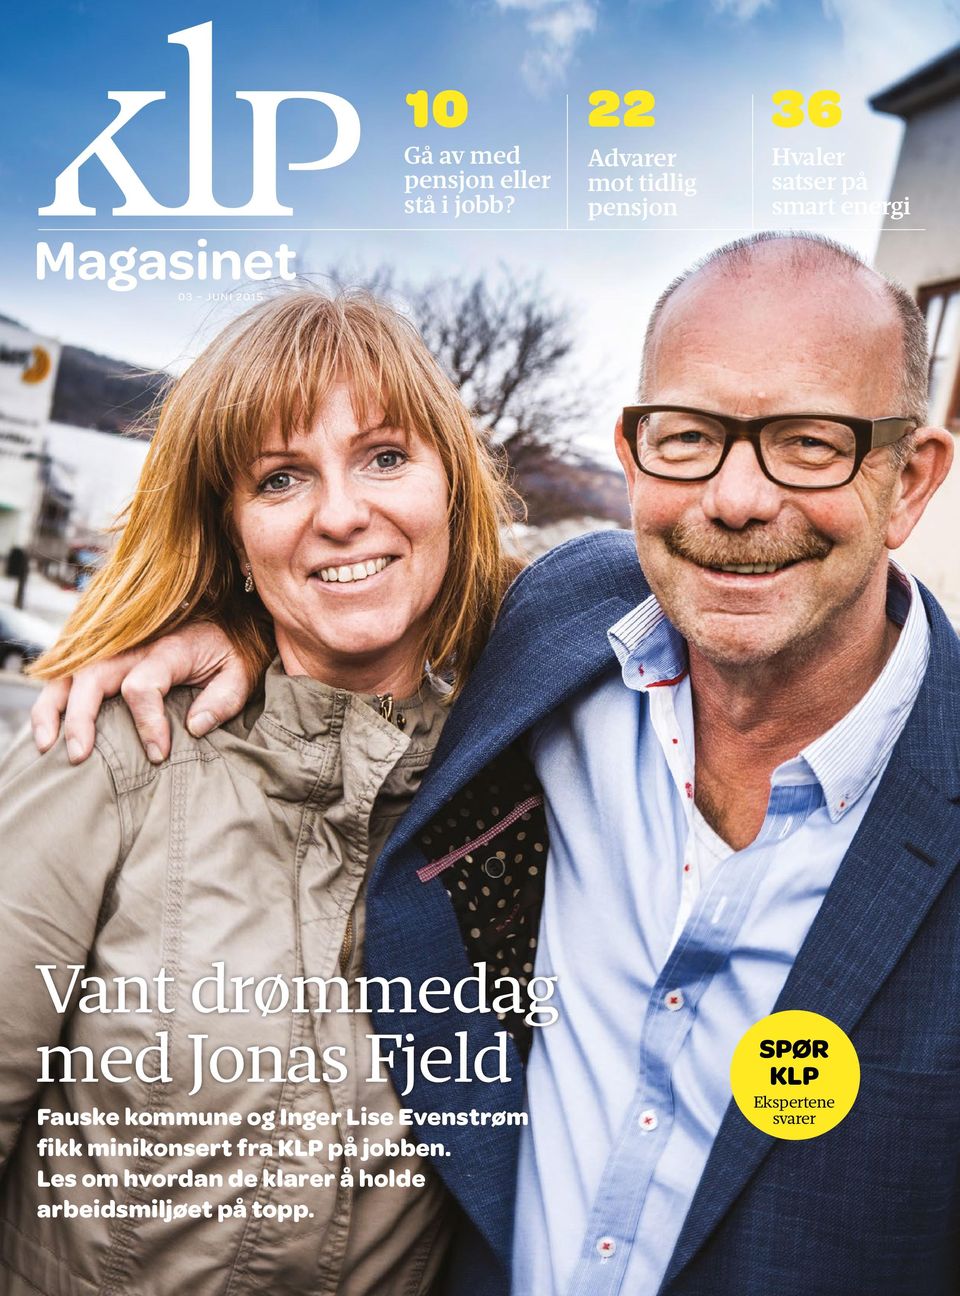 Jonas Fjeld Fauske kommune og Inger Lise Evenstrøm fikk minikonsert fra KLP på jobben.